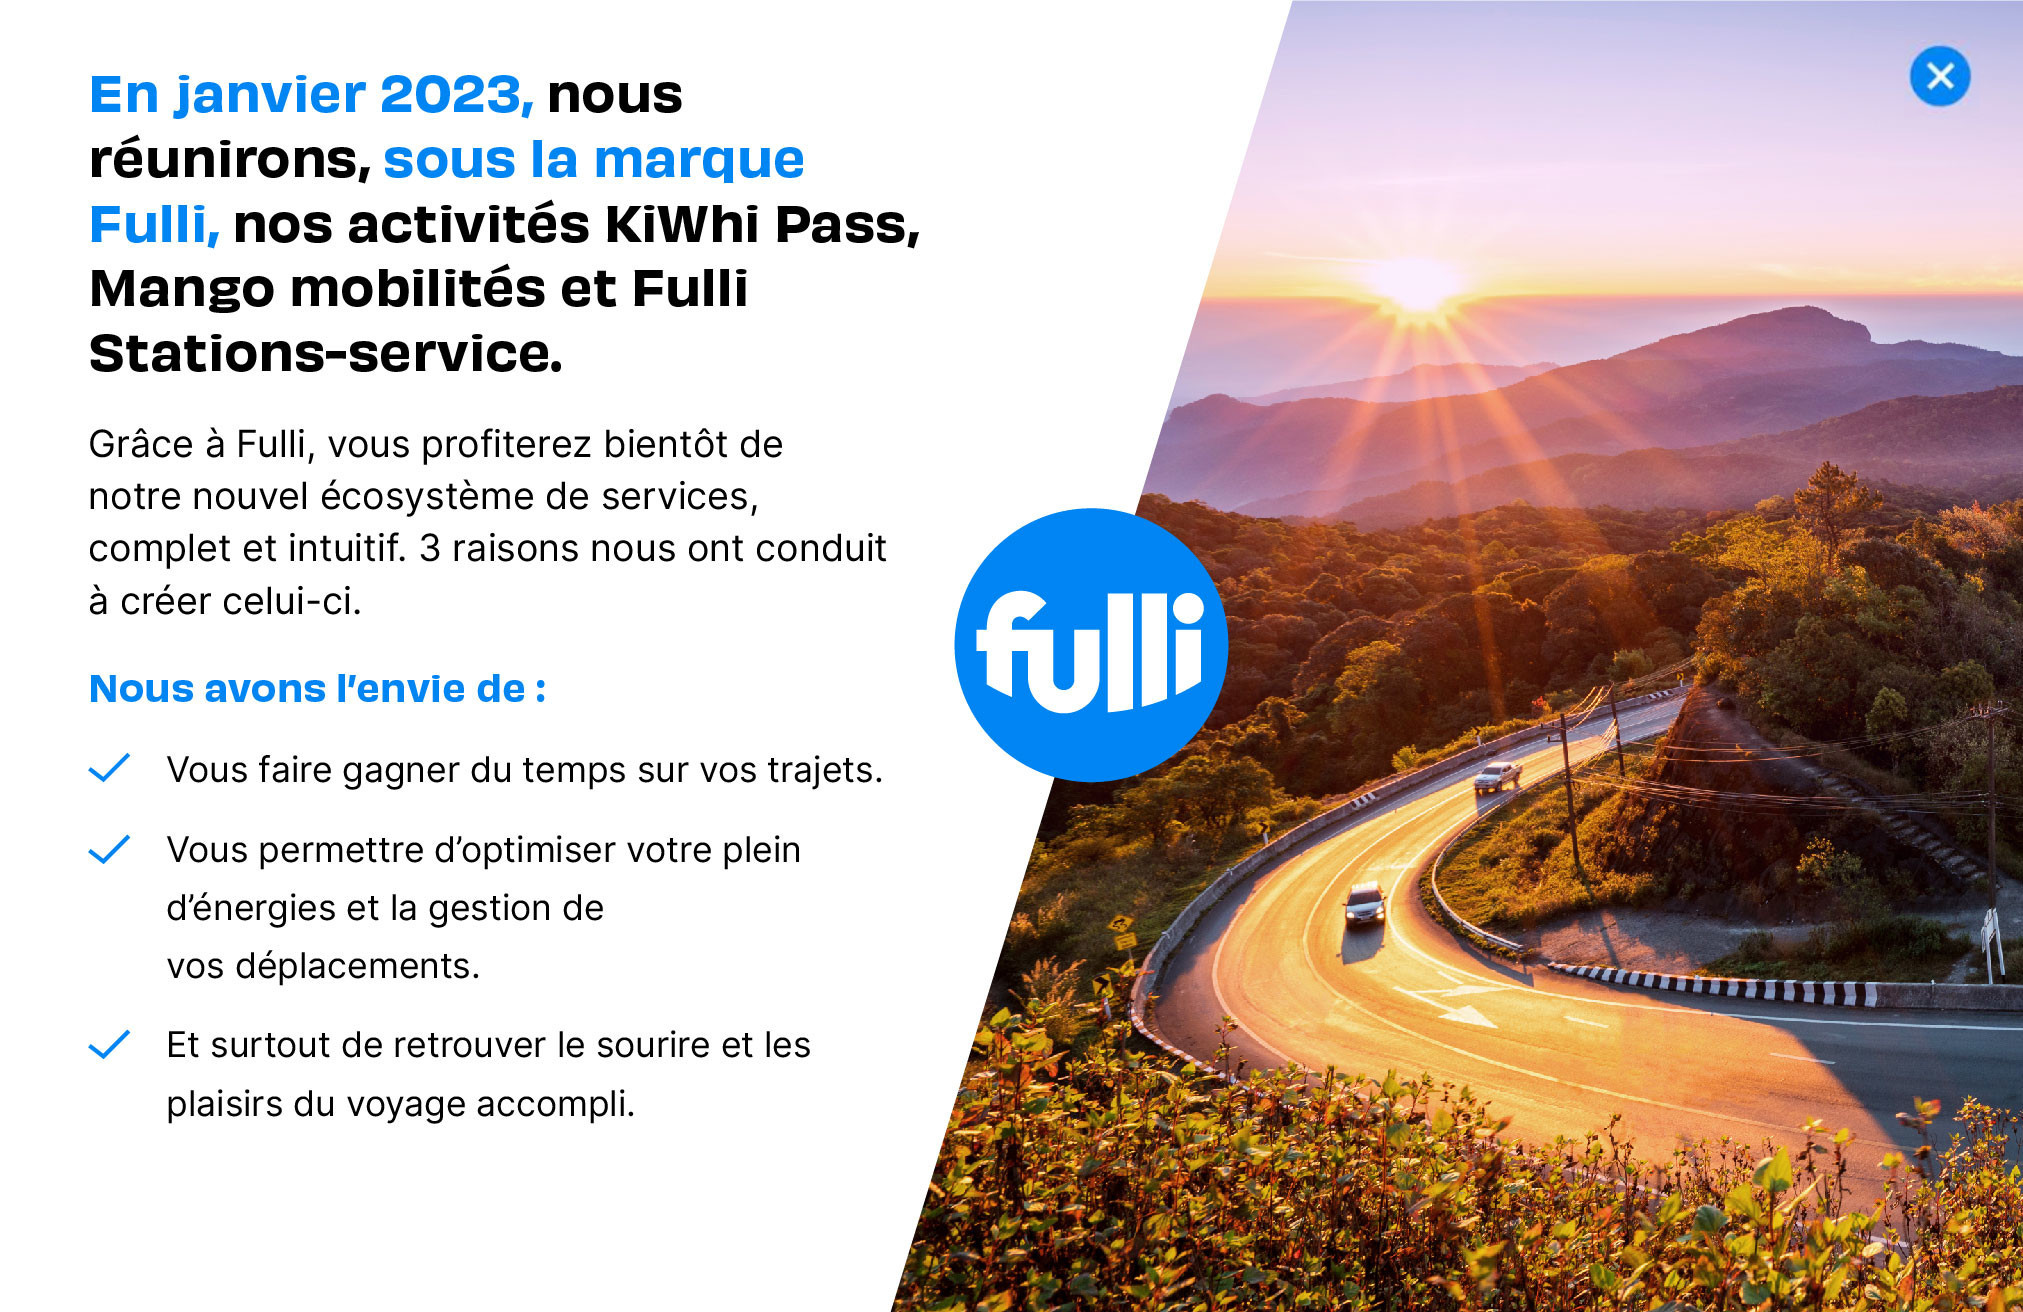 En janvier 2023, nous réunirons, sous la marque Fulli, nos activités KiWhi Pass, Mango mobilités, et Fulli Stations-Service.